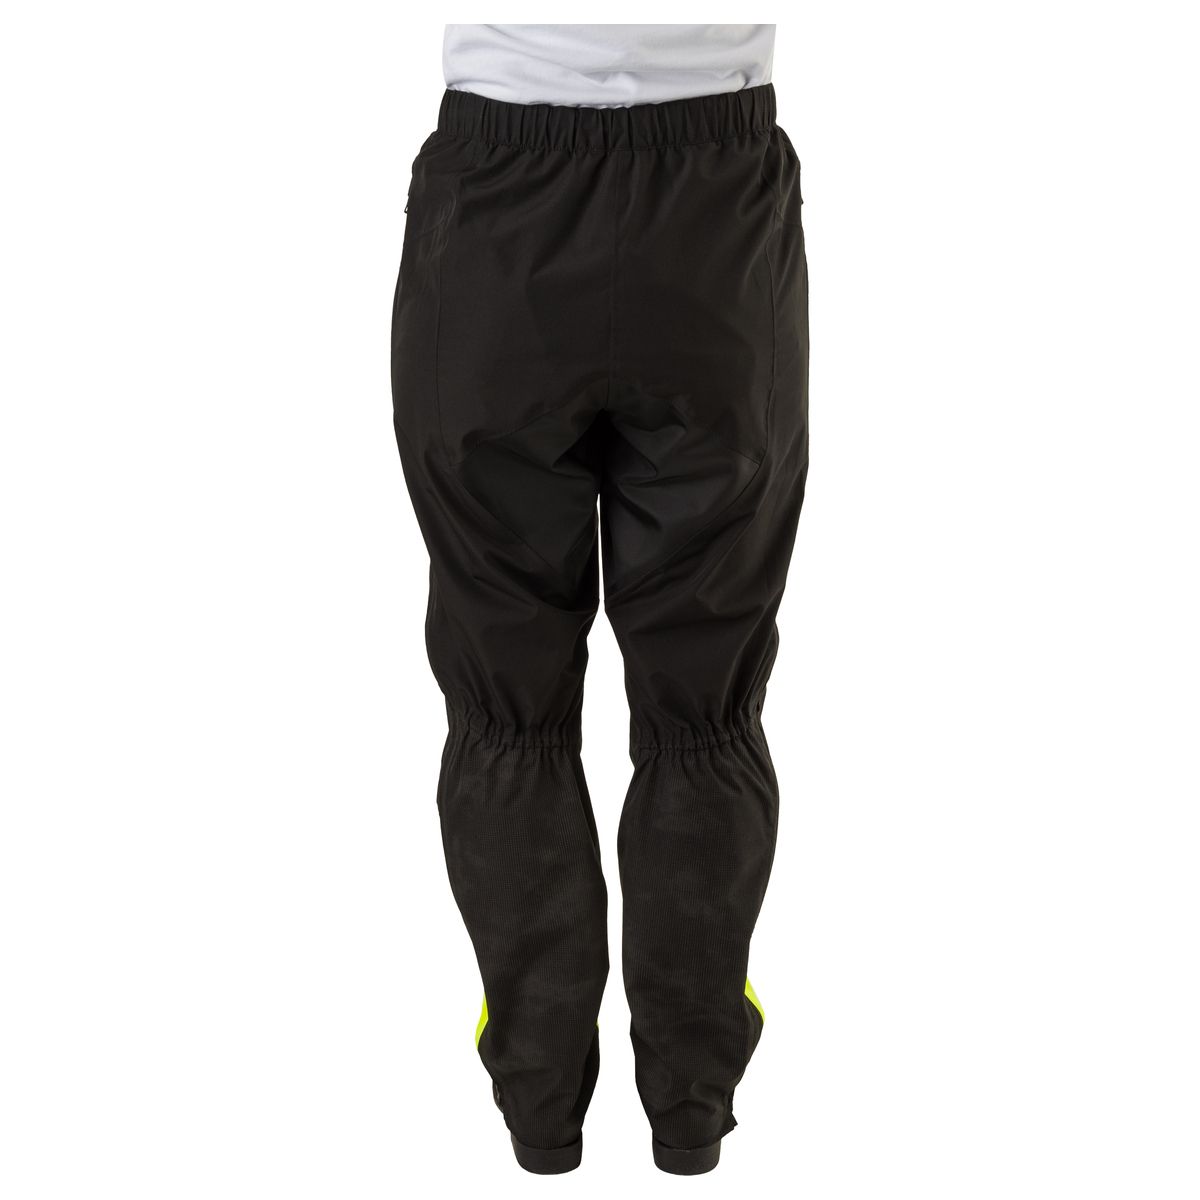 Tech Pantaloni da pioggia Commuter Donne Hi-vis & Reflection fit example